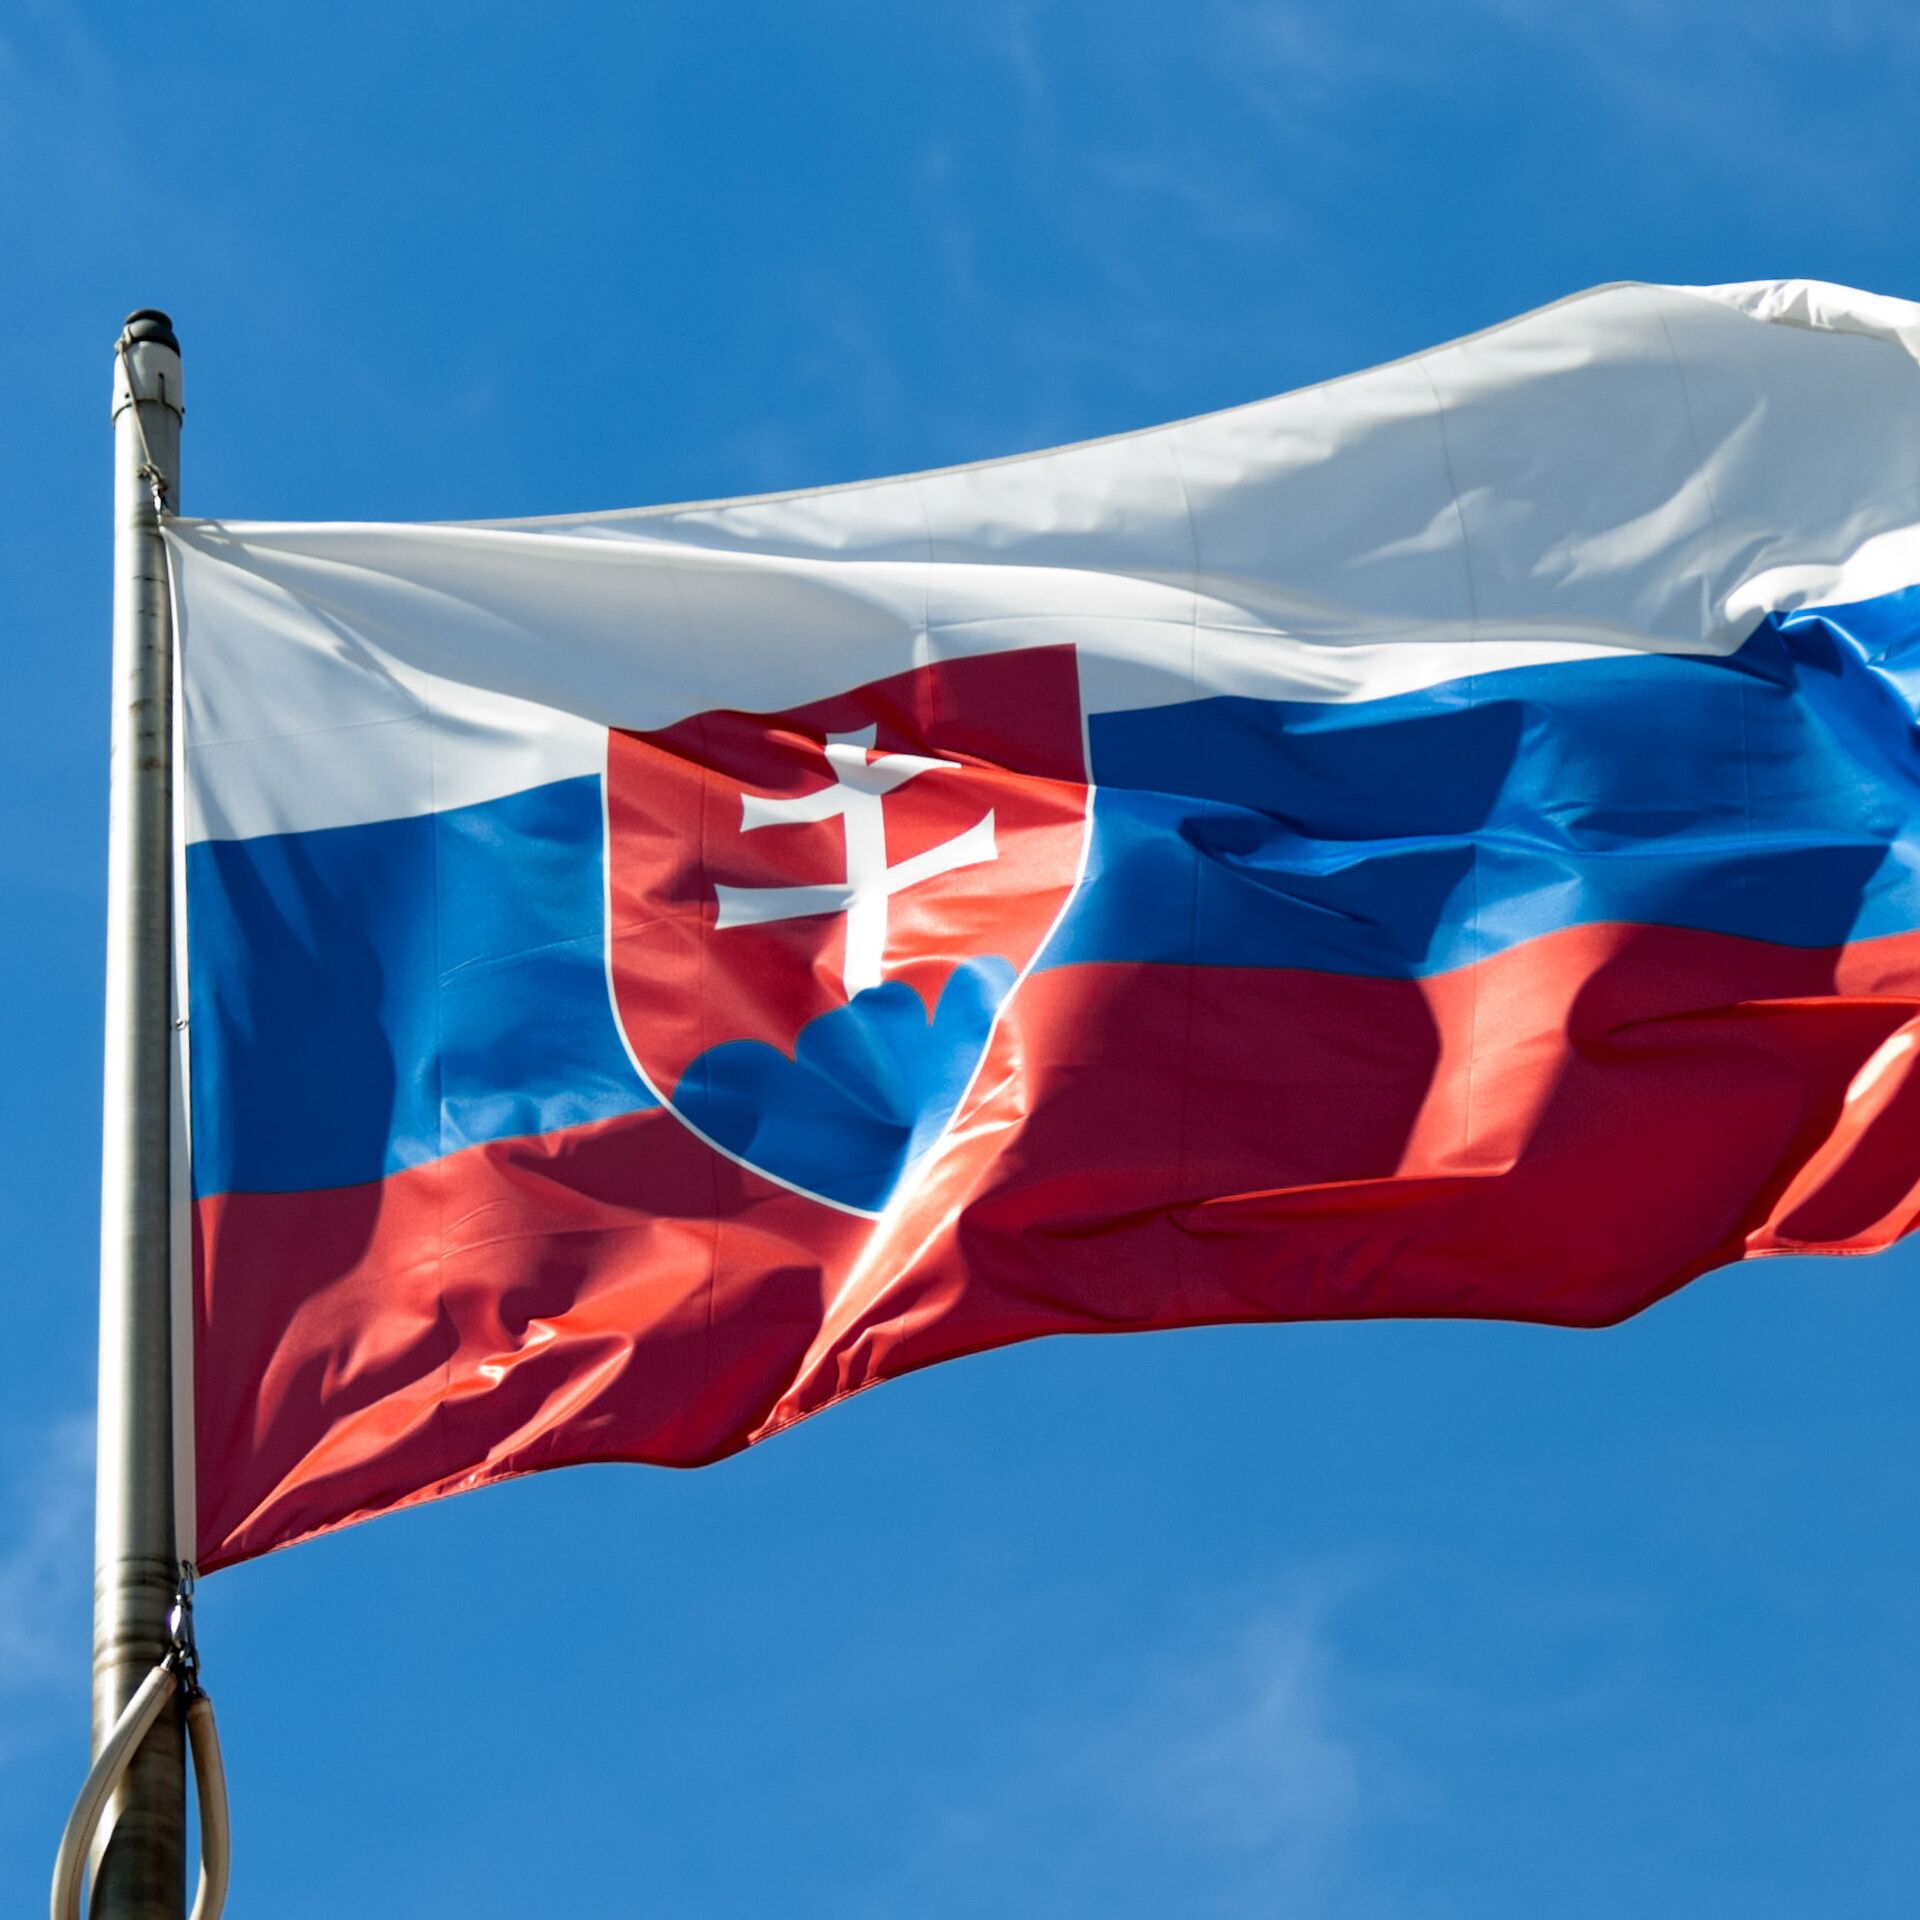 Quốc kỳ Slovakia 2024 trở thành niềm tự hào cho mỗi công dân Slovaks khi đất nước này đang trên đà phát triển rực rỡ. Năm 2024 chính là thời điểm Slovakia đón rất nhiều sự kiện quan trọng và quốc tế, mở ra nhiều cơ hội phát triển về kinh tế, văn hóa và du lịch. Cùng đến với hình ảnh Quốc kỳ Slovakia để đón nhận những điều tuyệt vời của đất nước này.